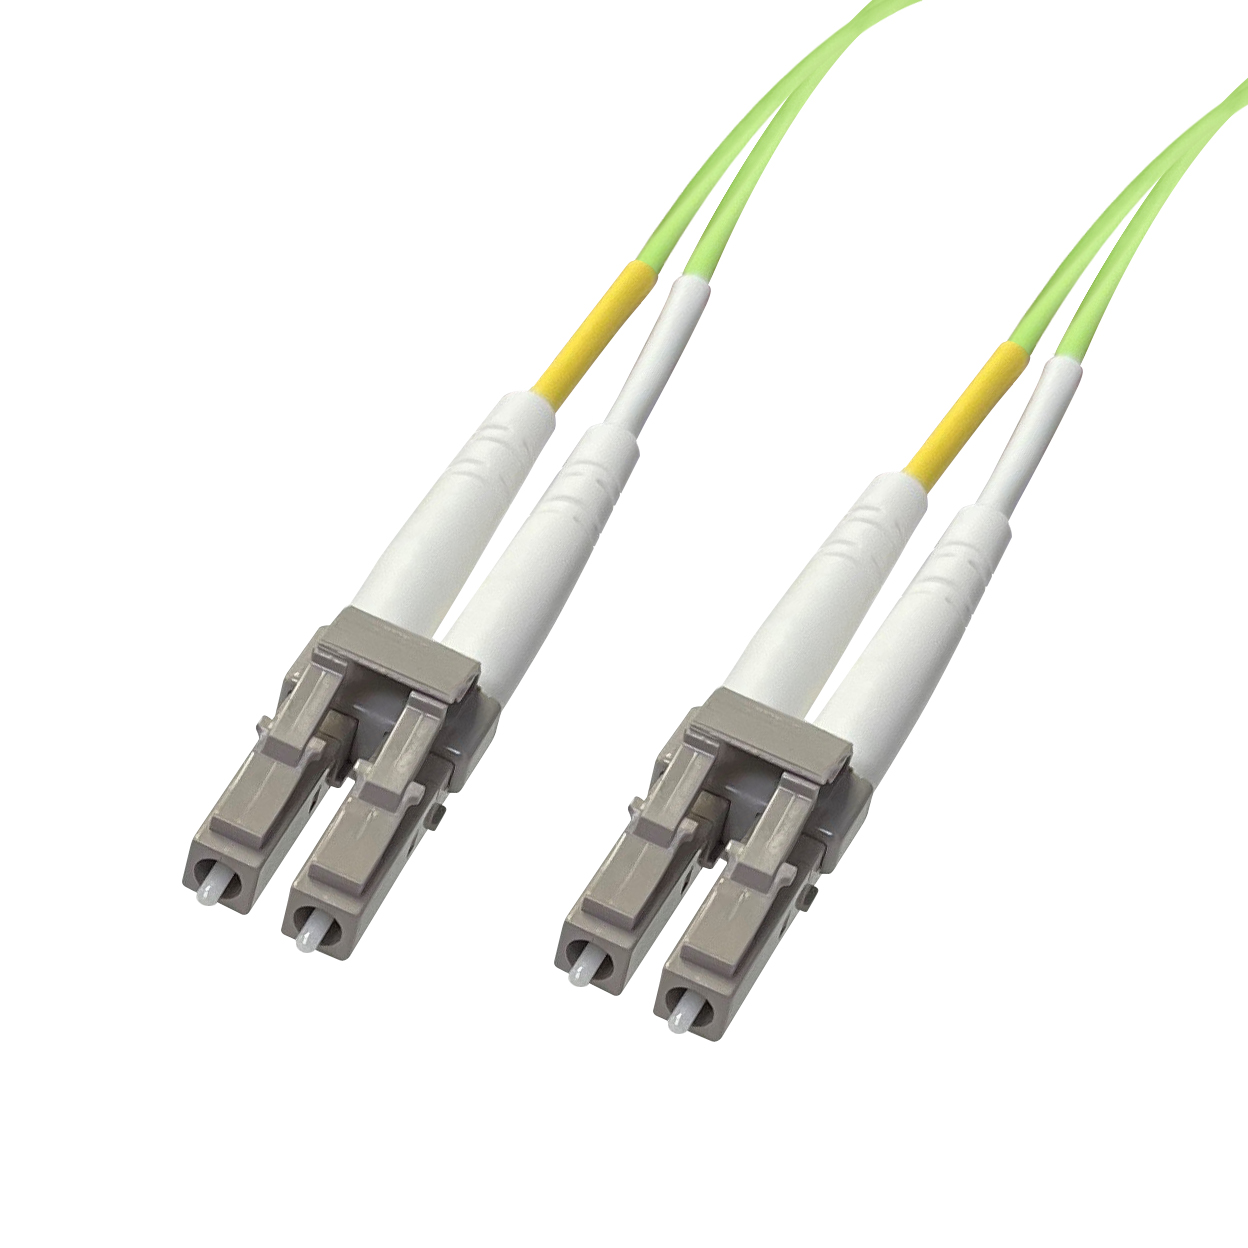 50/125 OM5 Multi-mode Fibre Patch Cables